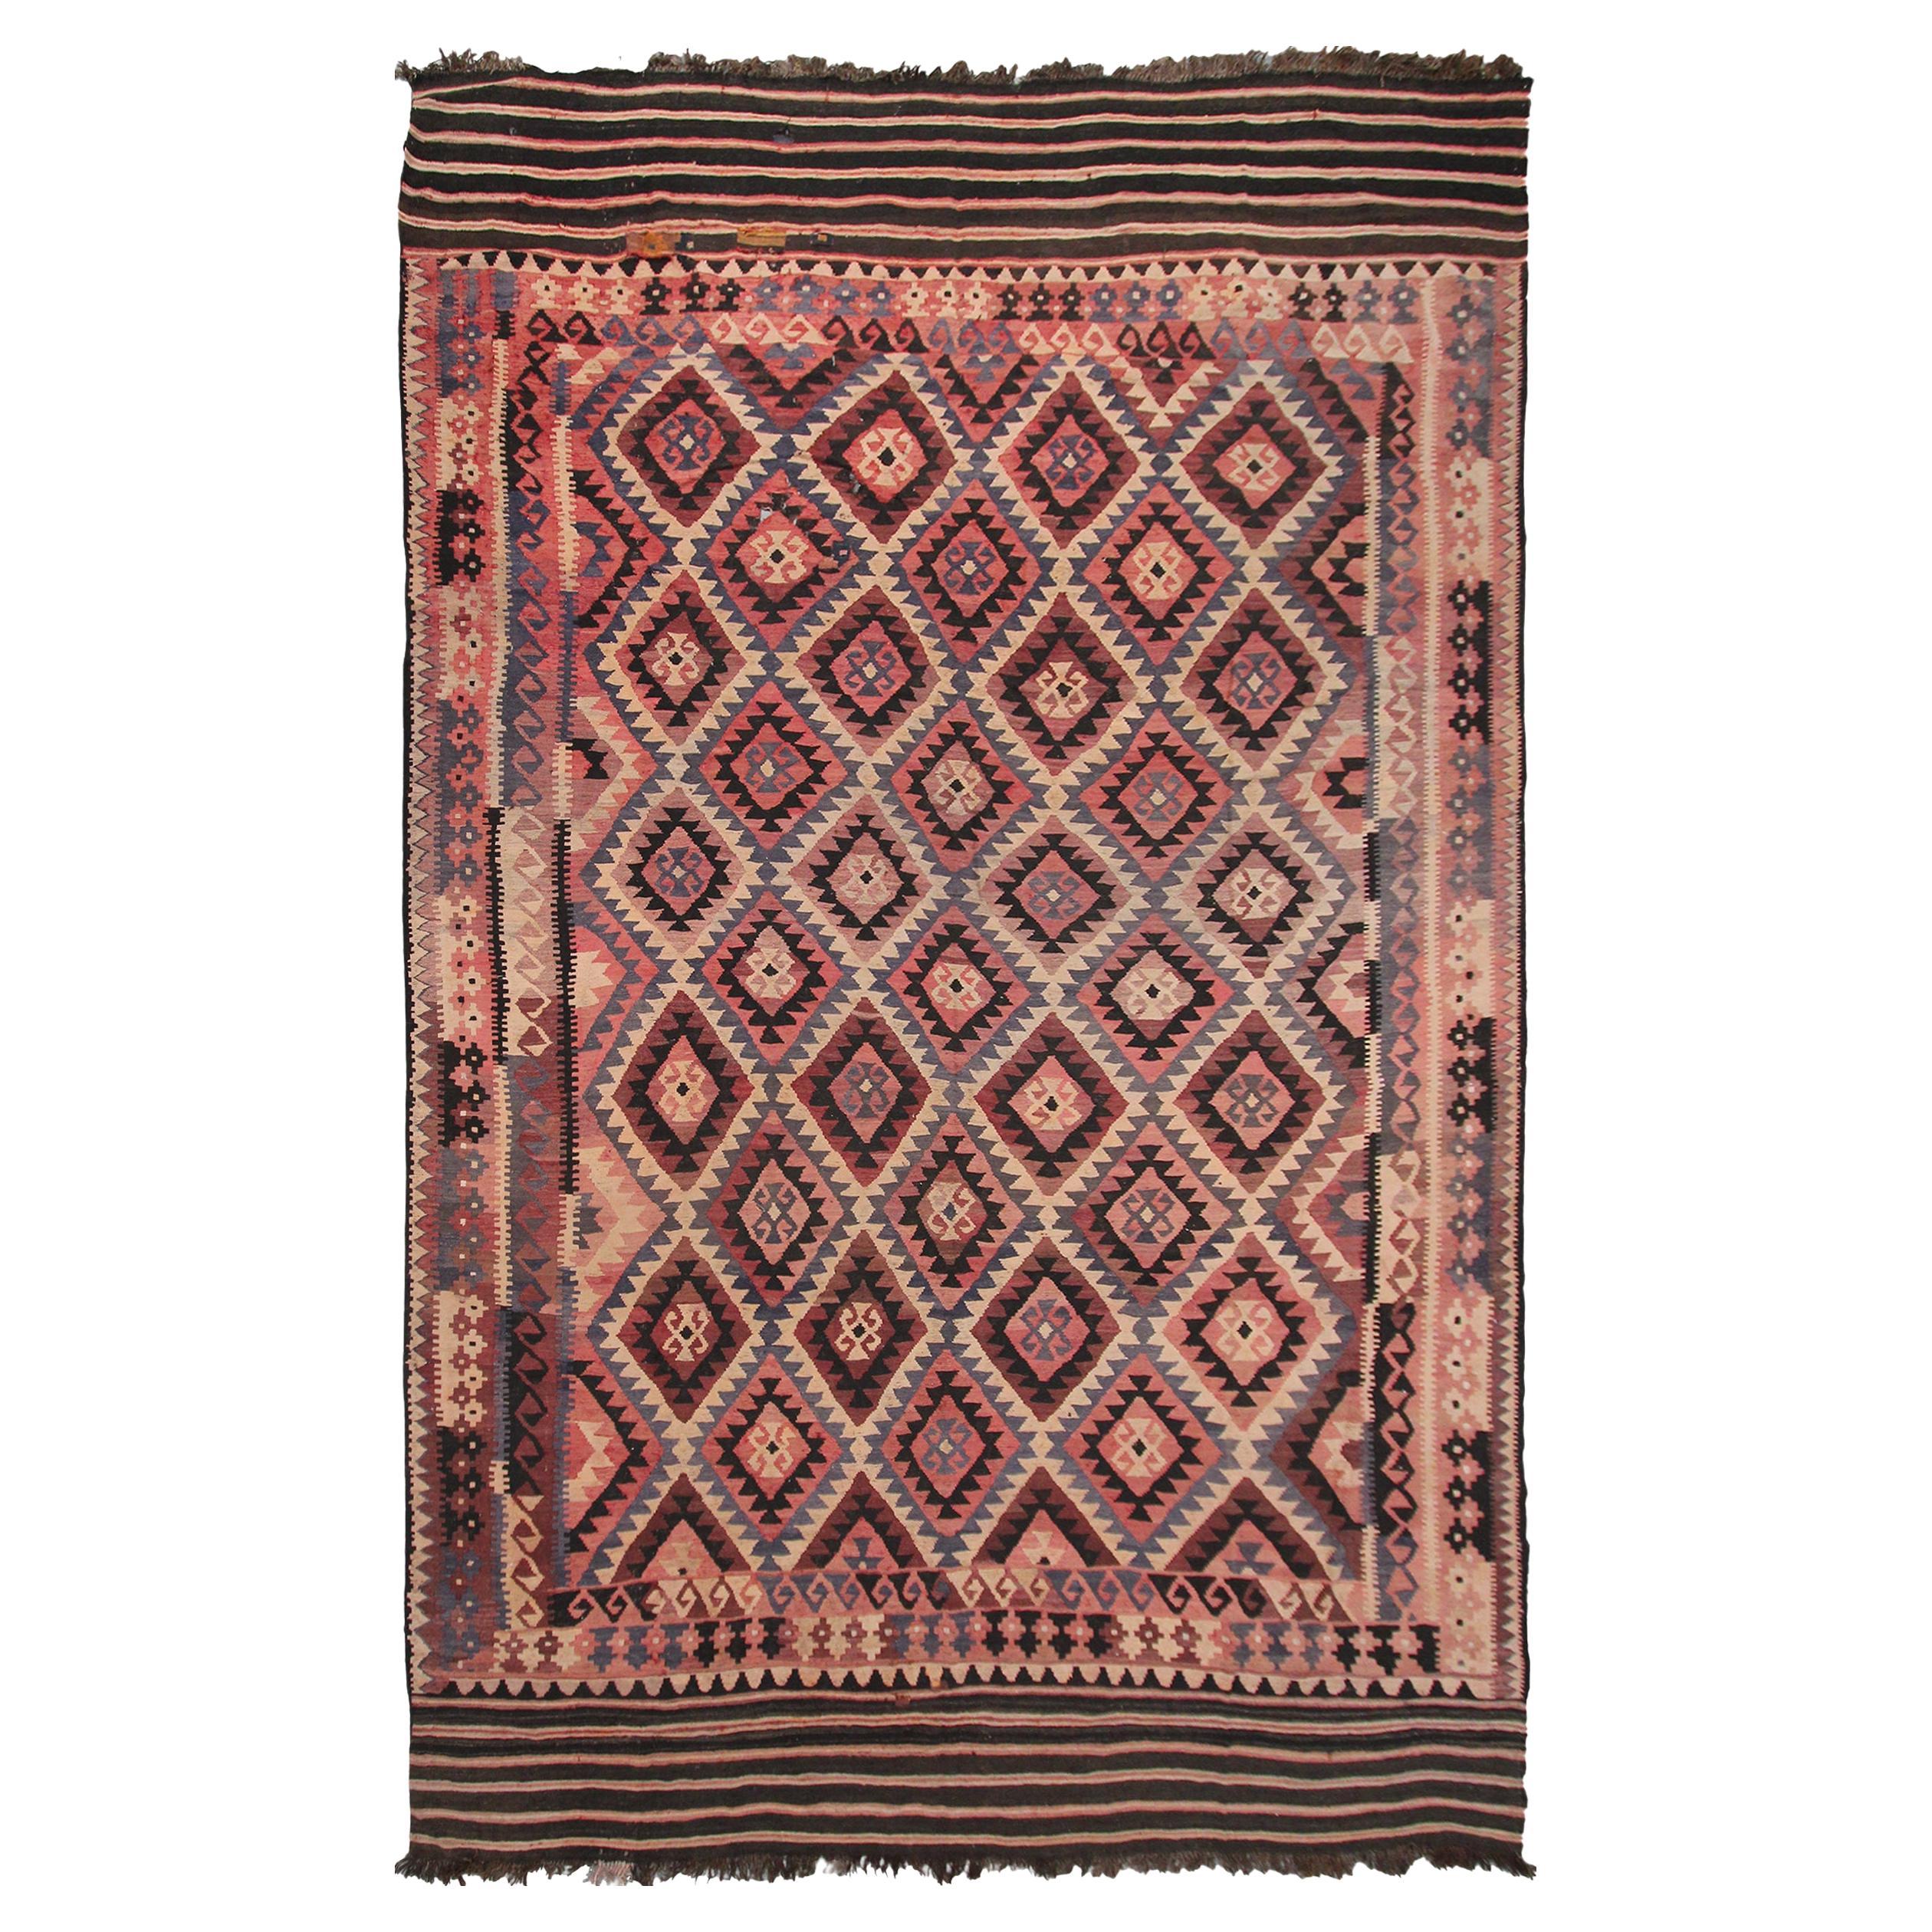 1920 Antiker Flachgewebter Kelim-Teppich aus Stammes Kelim Geometrischer Teppich 10x16 310cm x 472cm